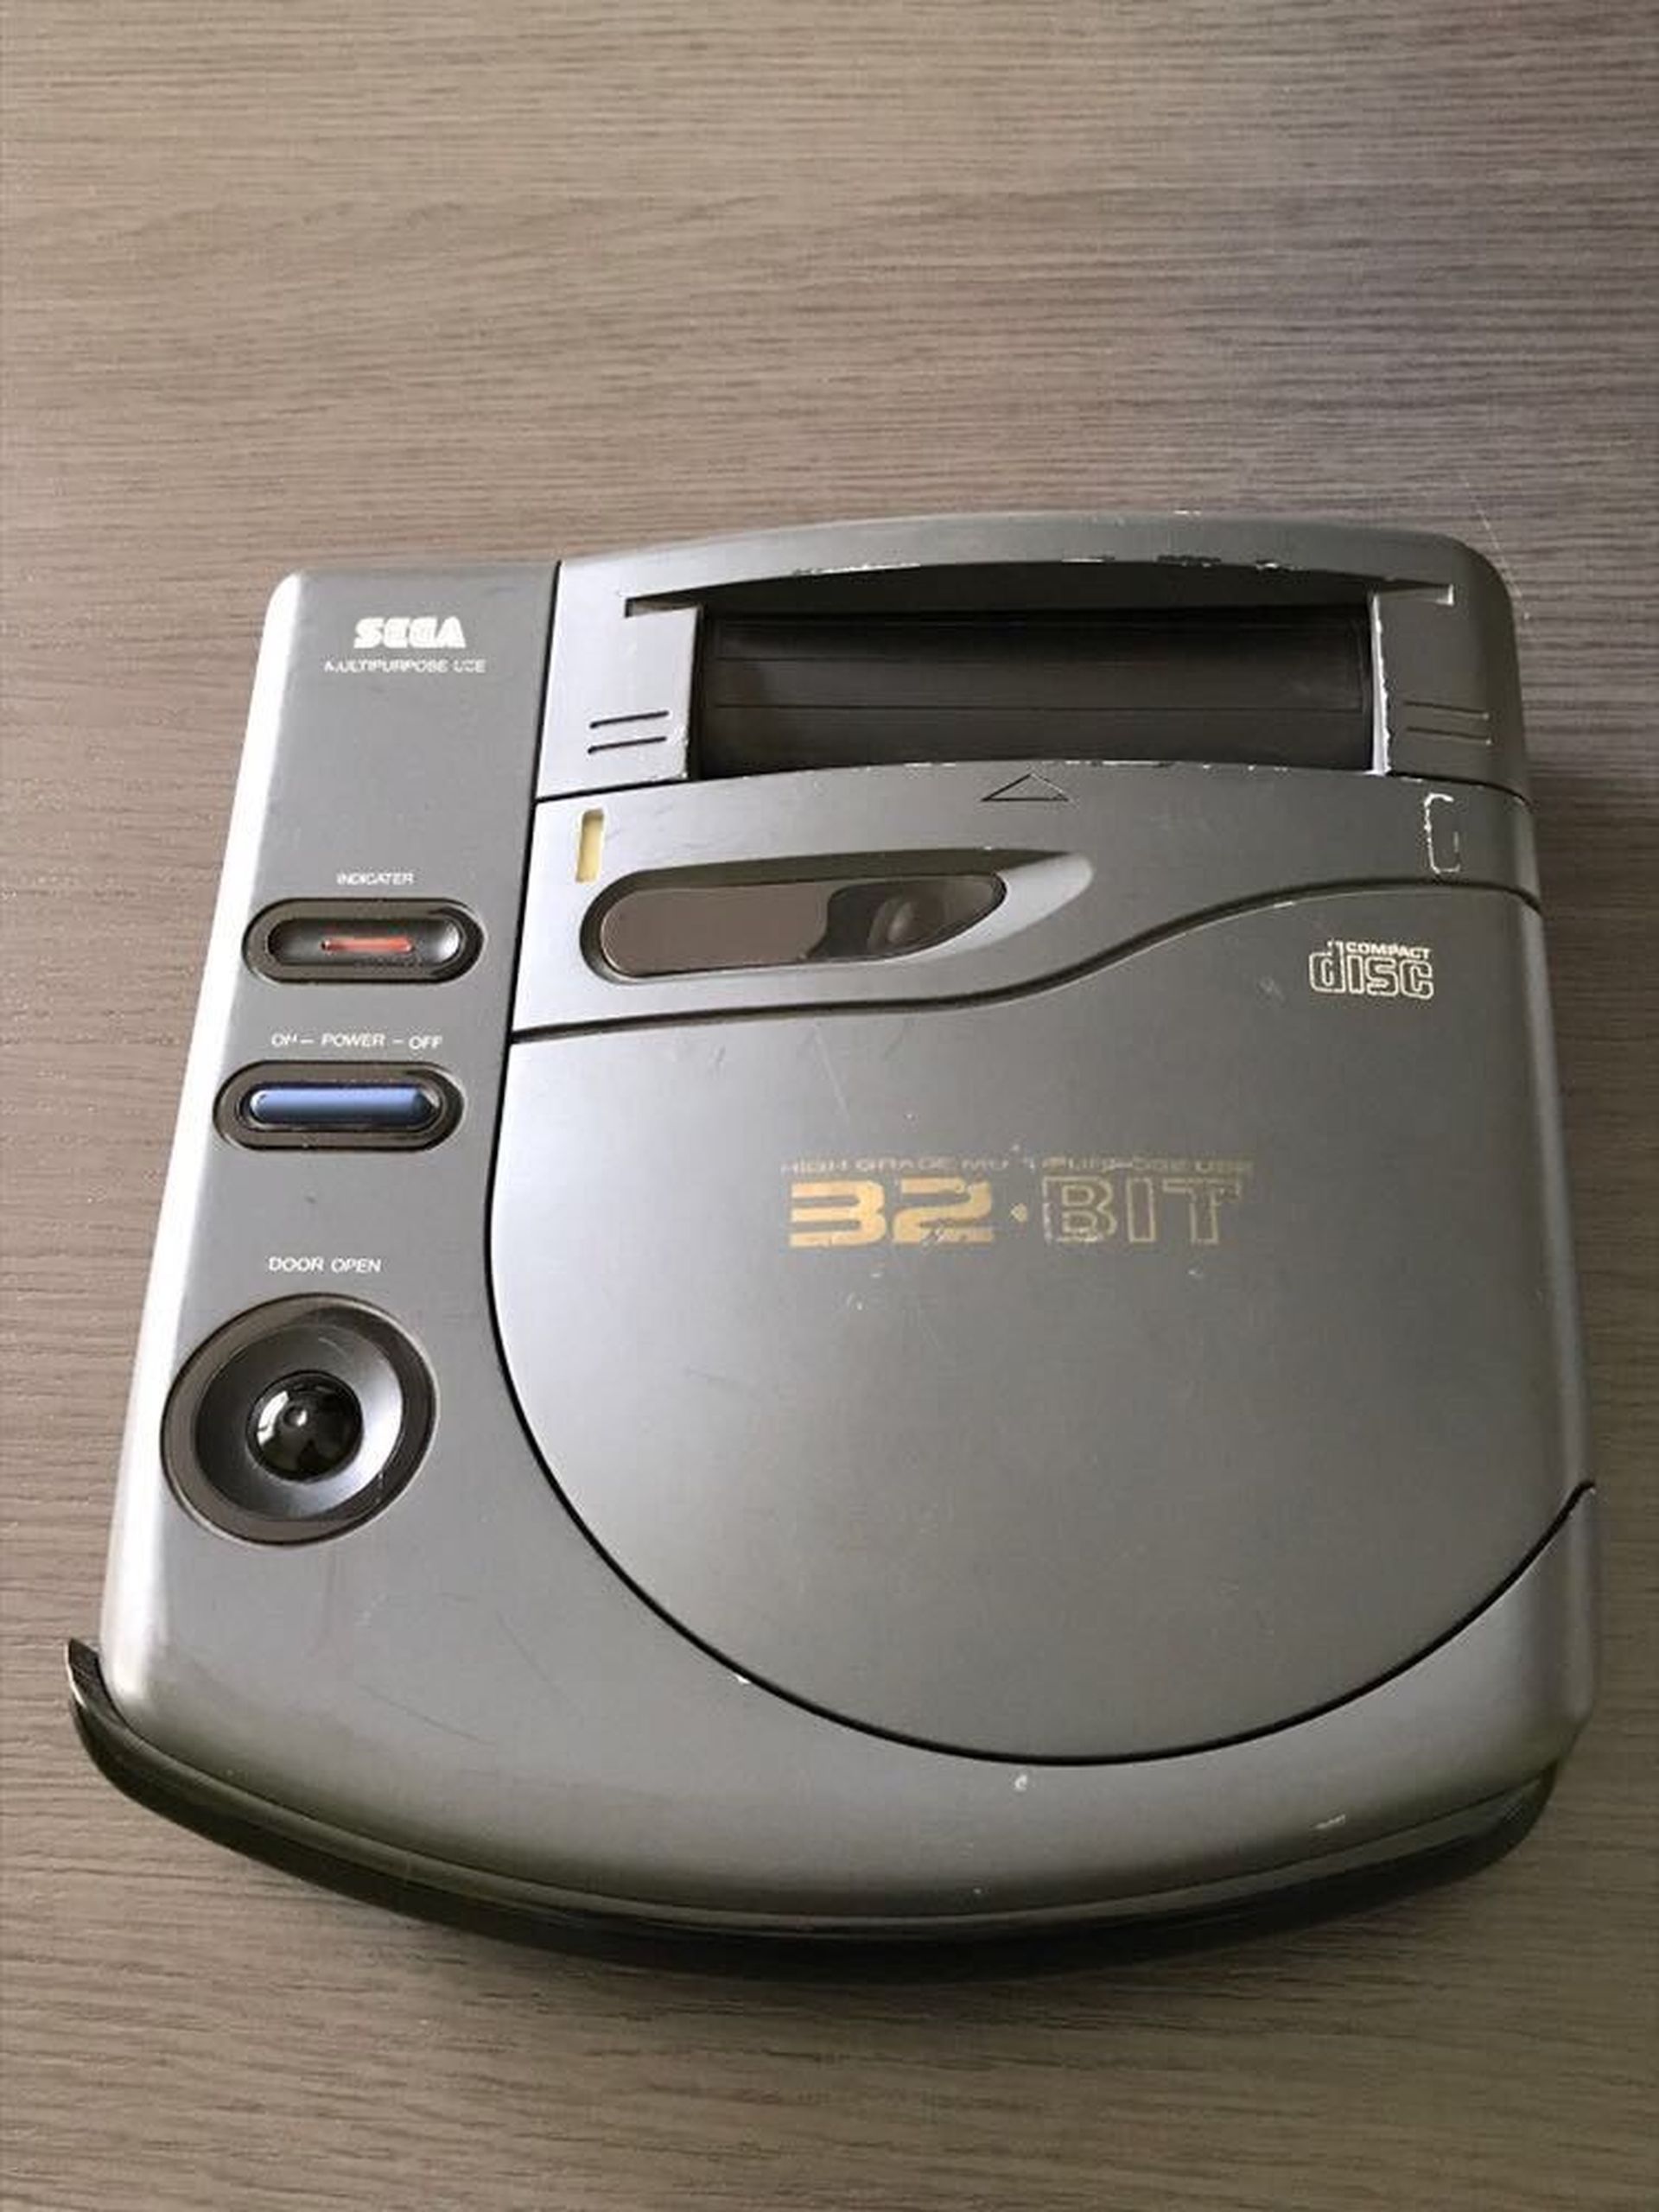 Sega Saturn Prototype C